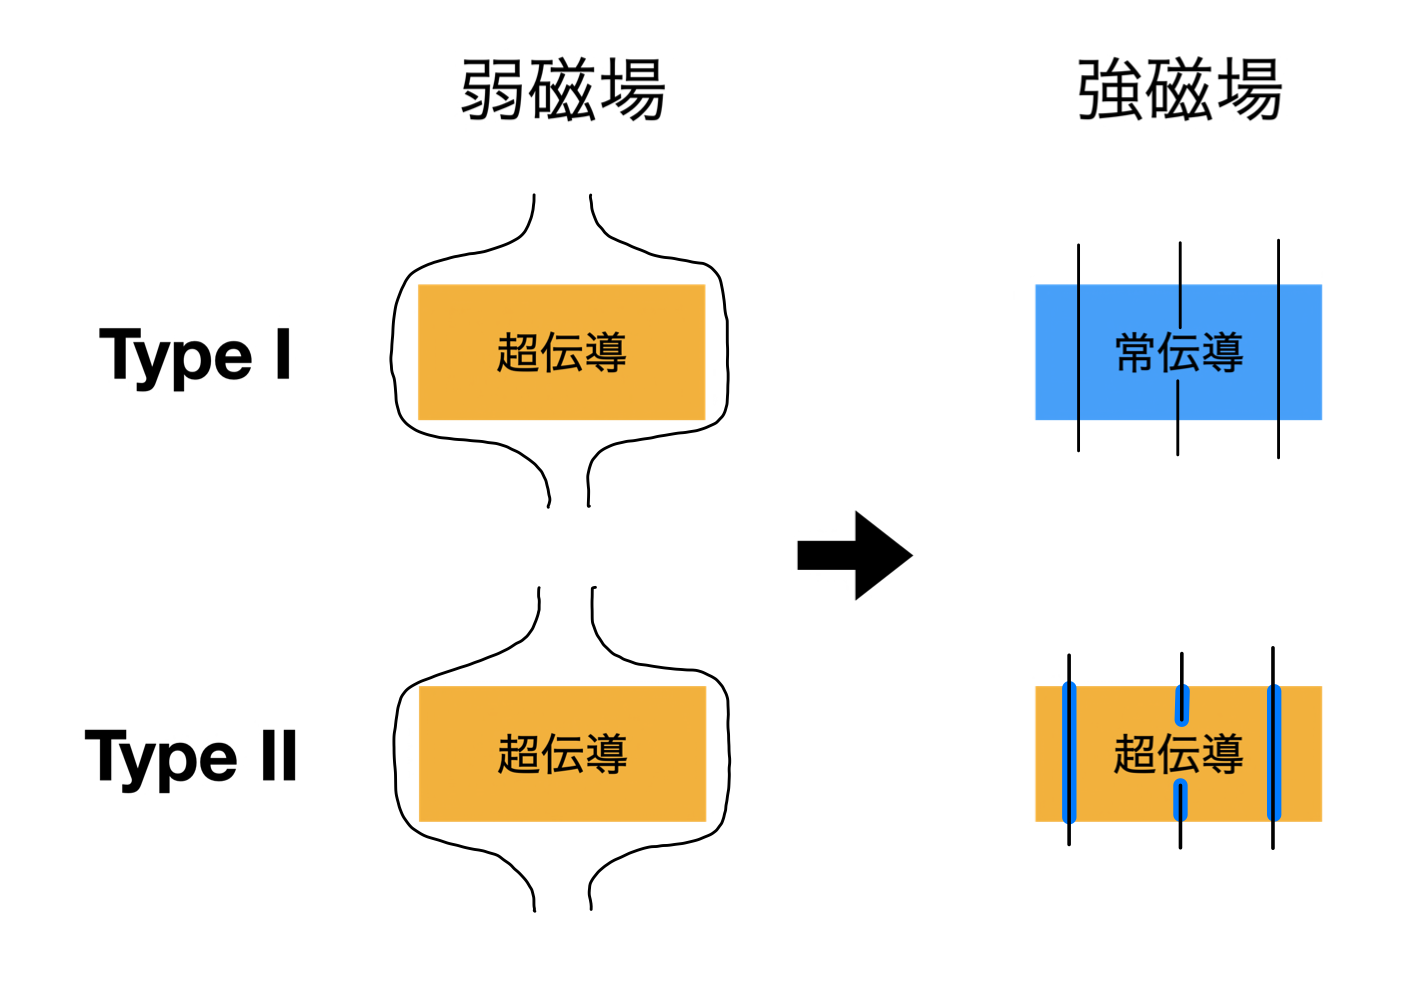 Type IとIIの違い。Type Iは臨界磁場を超えると全体が常伝導体になる。Type IIは下部臨界磁場を超えると、磁場が侵入した部分のみが常伝導体となり（青い部分）、それ以外の部分は超伝導体（オレンジ色の部分）を保つ。